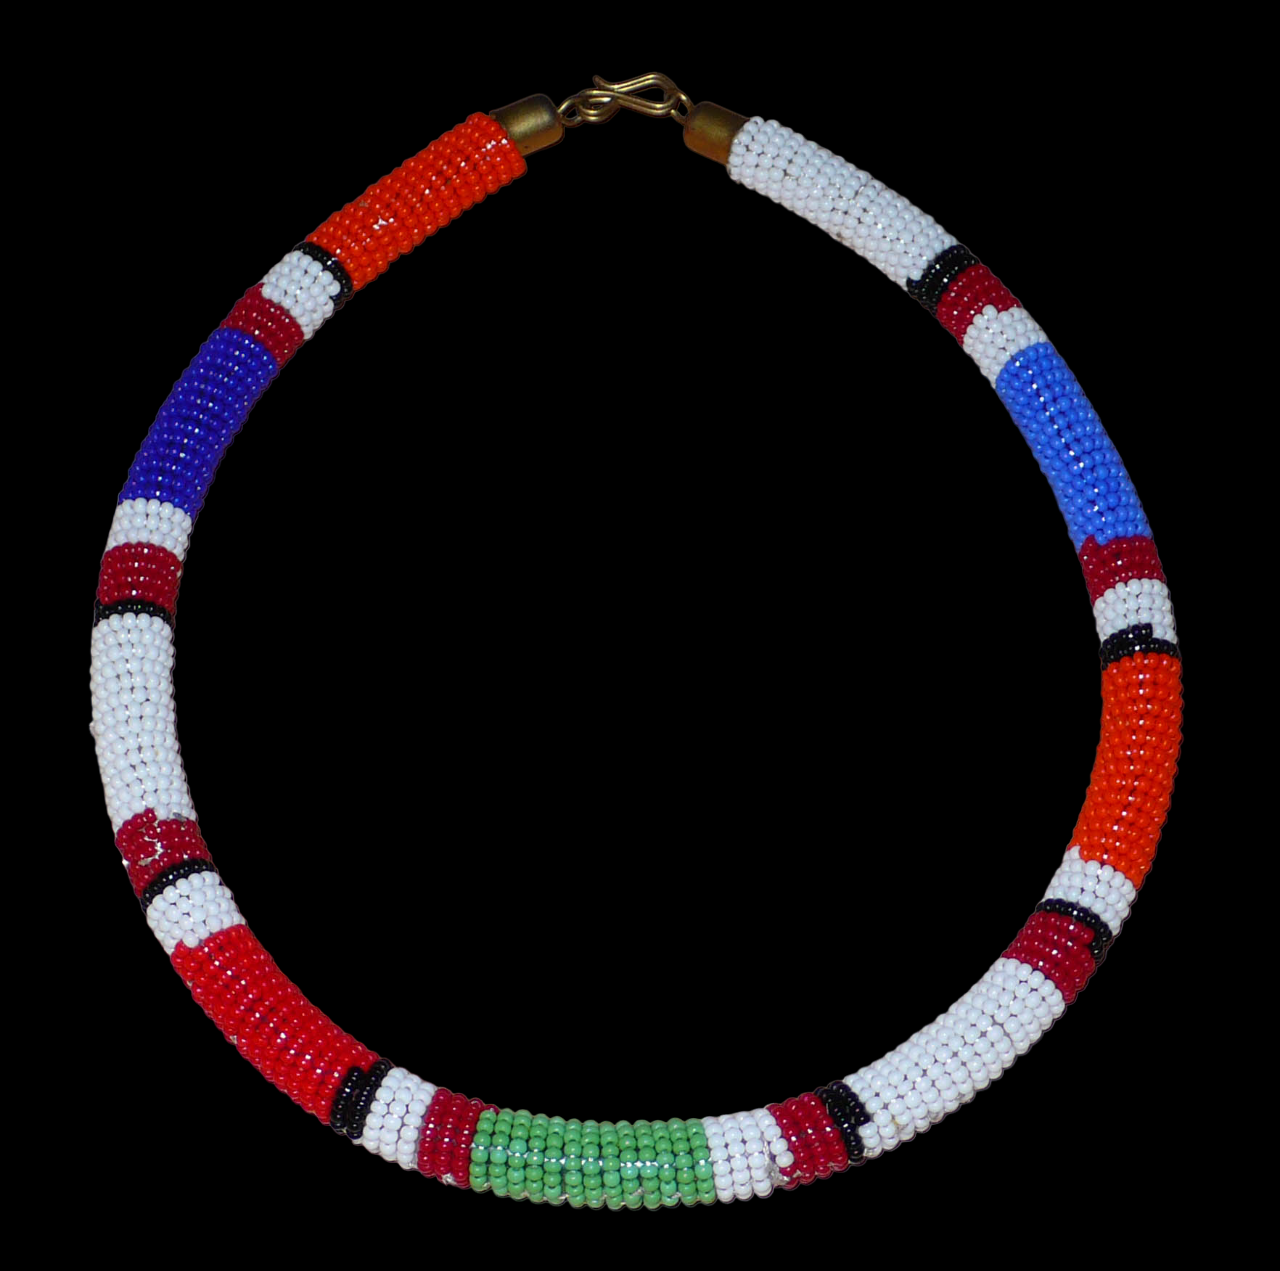 Bijou africain traditionnel. Collier africain tubulaire à motifs ethniques Massai fait de perles de rocaille bleues, blanches, bleues, vertes et rouges enroulées autour d'un tube en plastique. Il mesure 18 cm de long, sa longueur autour du cou est de 45 cm et son épaisseur de 1 cm ; il s'attache avec un crochet. Il est ici présenté sur un fond noir. Timeless Fineries